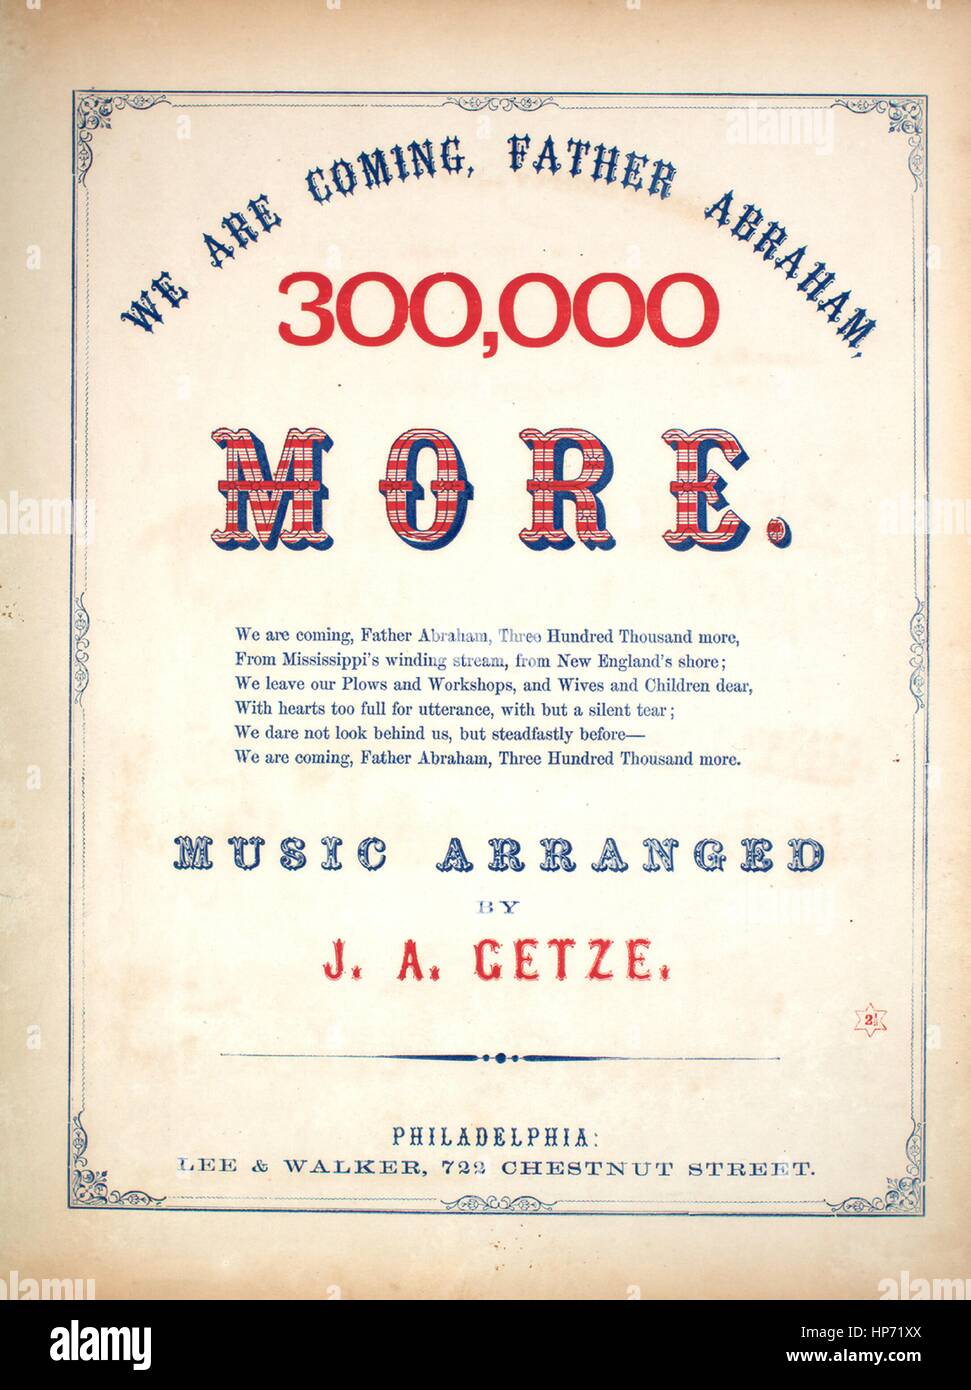 Sheet Music image de couverture de la chanson 'Nous sommes père Abraham,  plus 300 000 Chanson et Chorus', avec une œuvre originale de la lecture des  notes de musique organisé par JA'